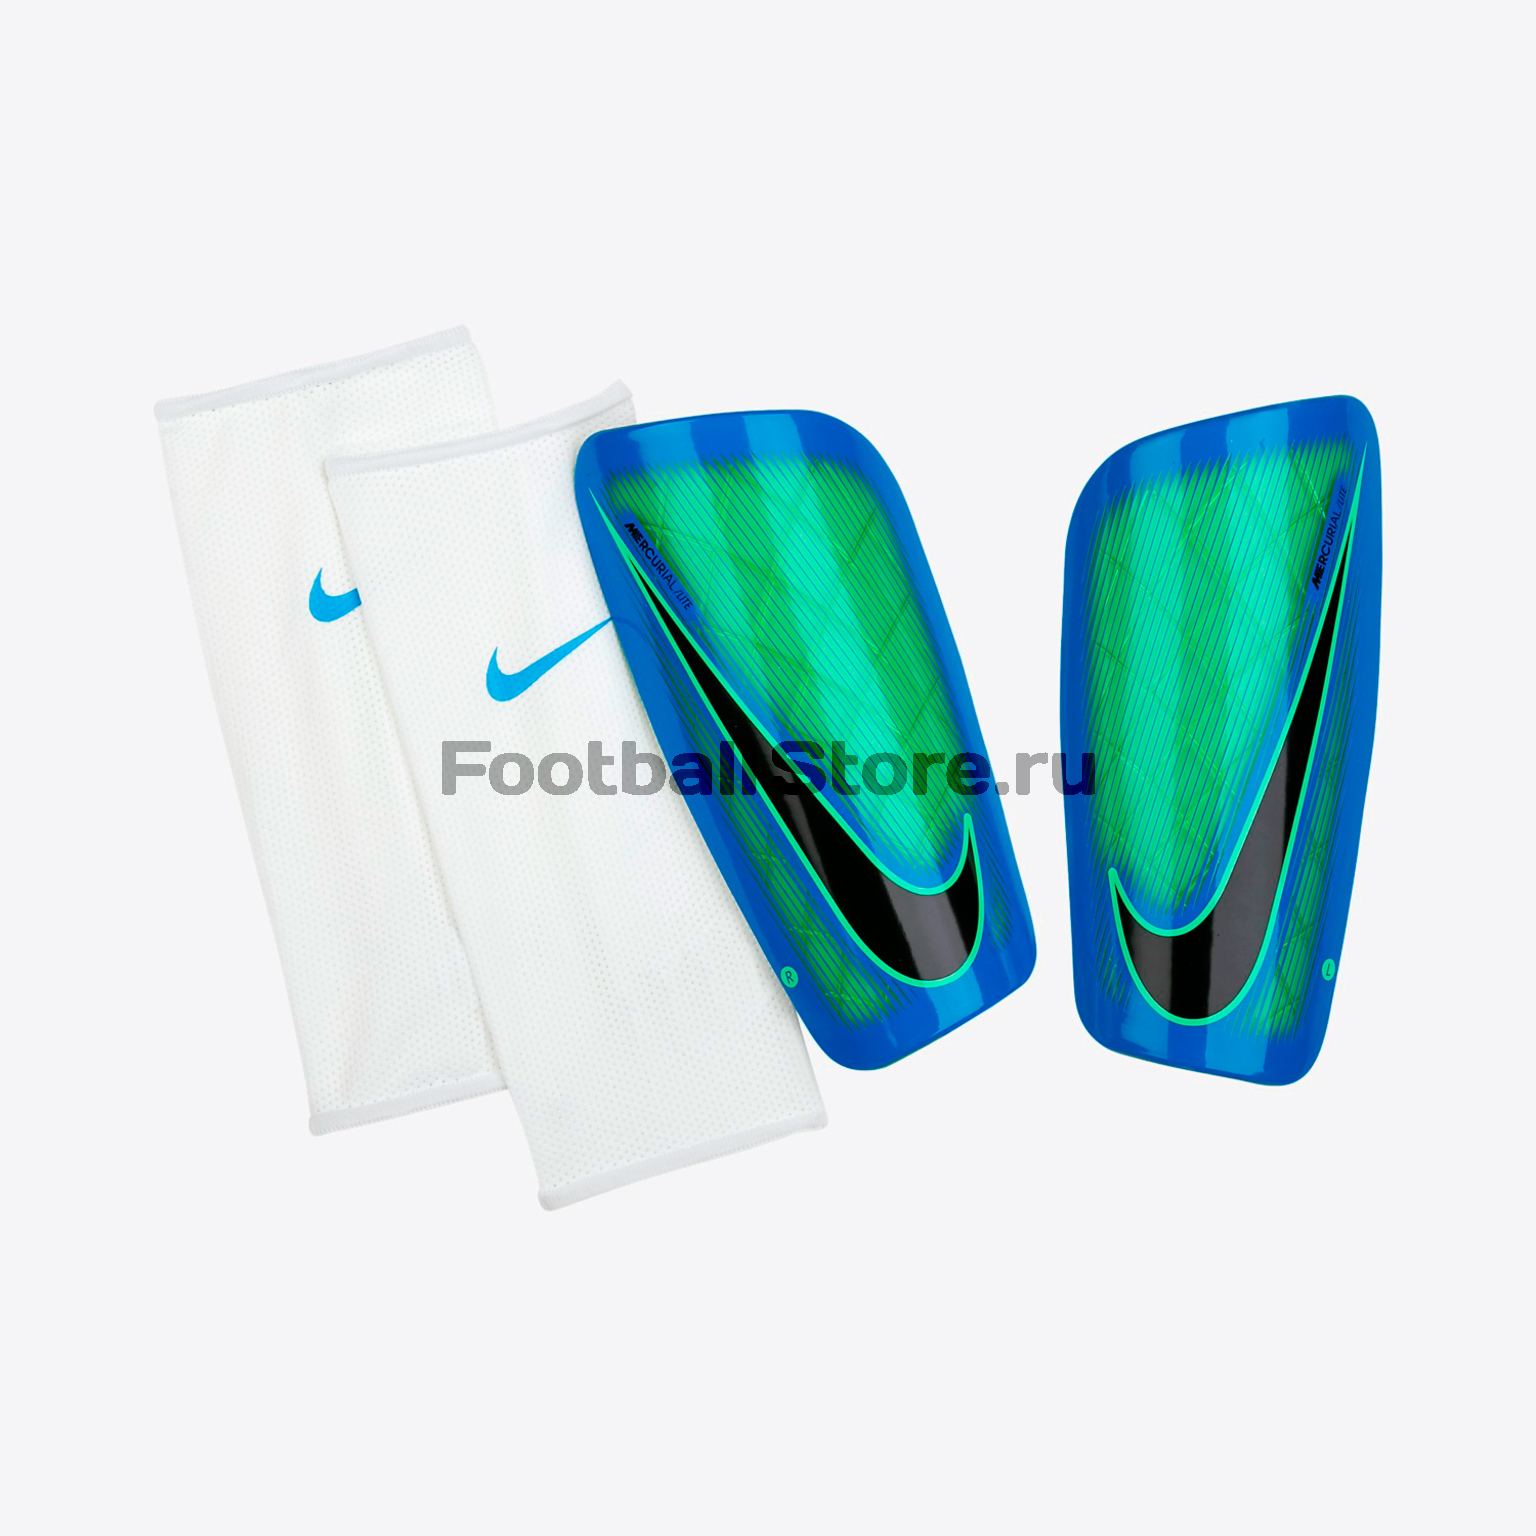 Щитки Nike NK Mercurial LT GRD SP2086-300 